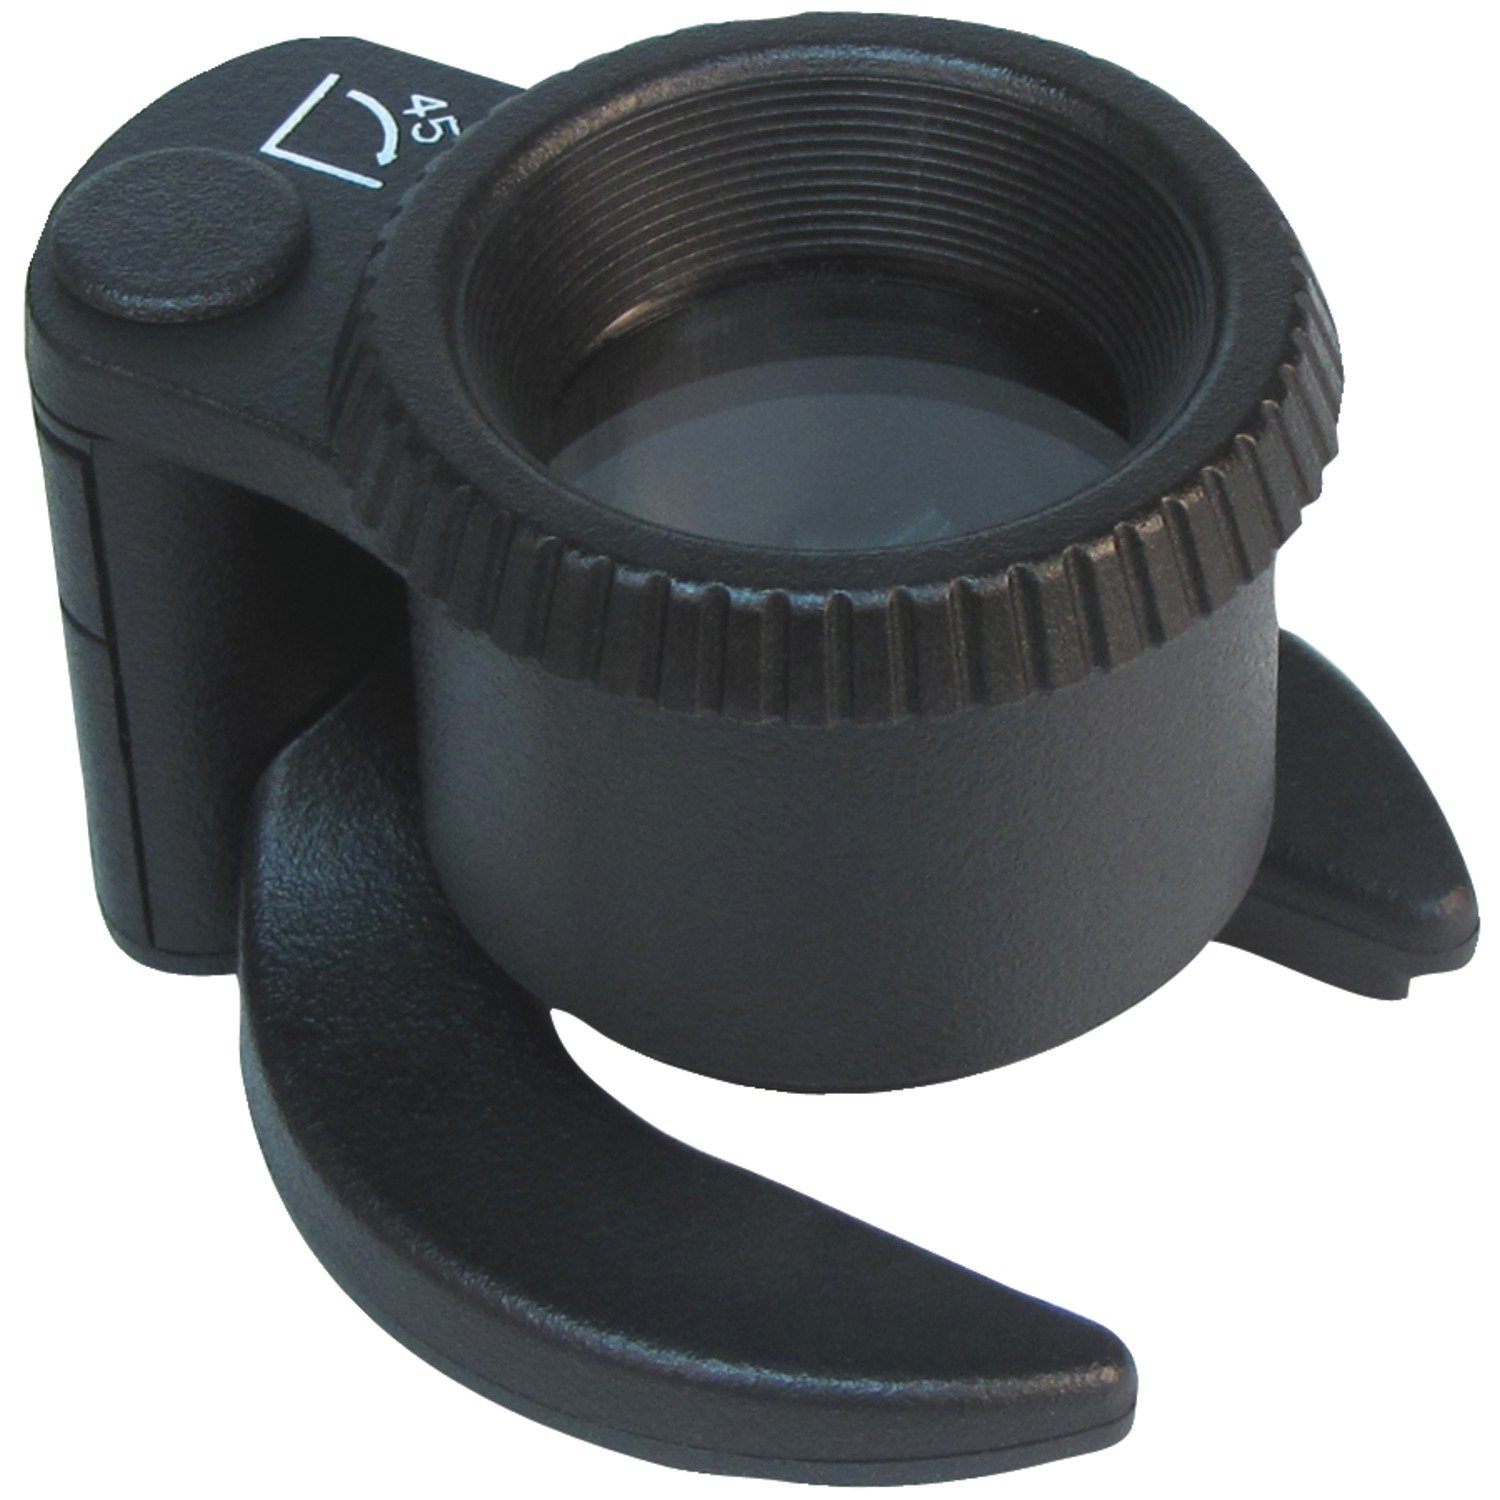 Kính lúp chuyên vệ sinh cảm biến máy ảnh SensorMag SM-44 (4.5x) - Hàng chính hãng